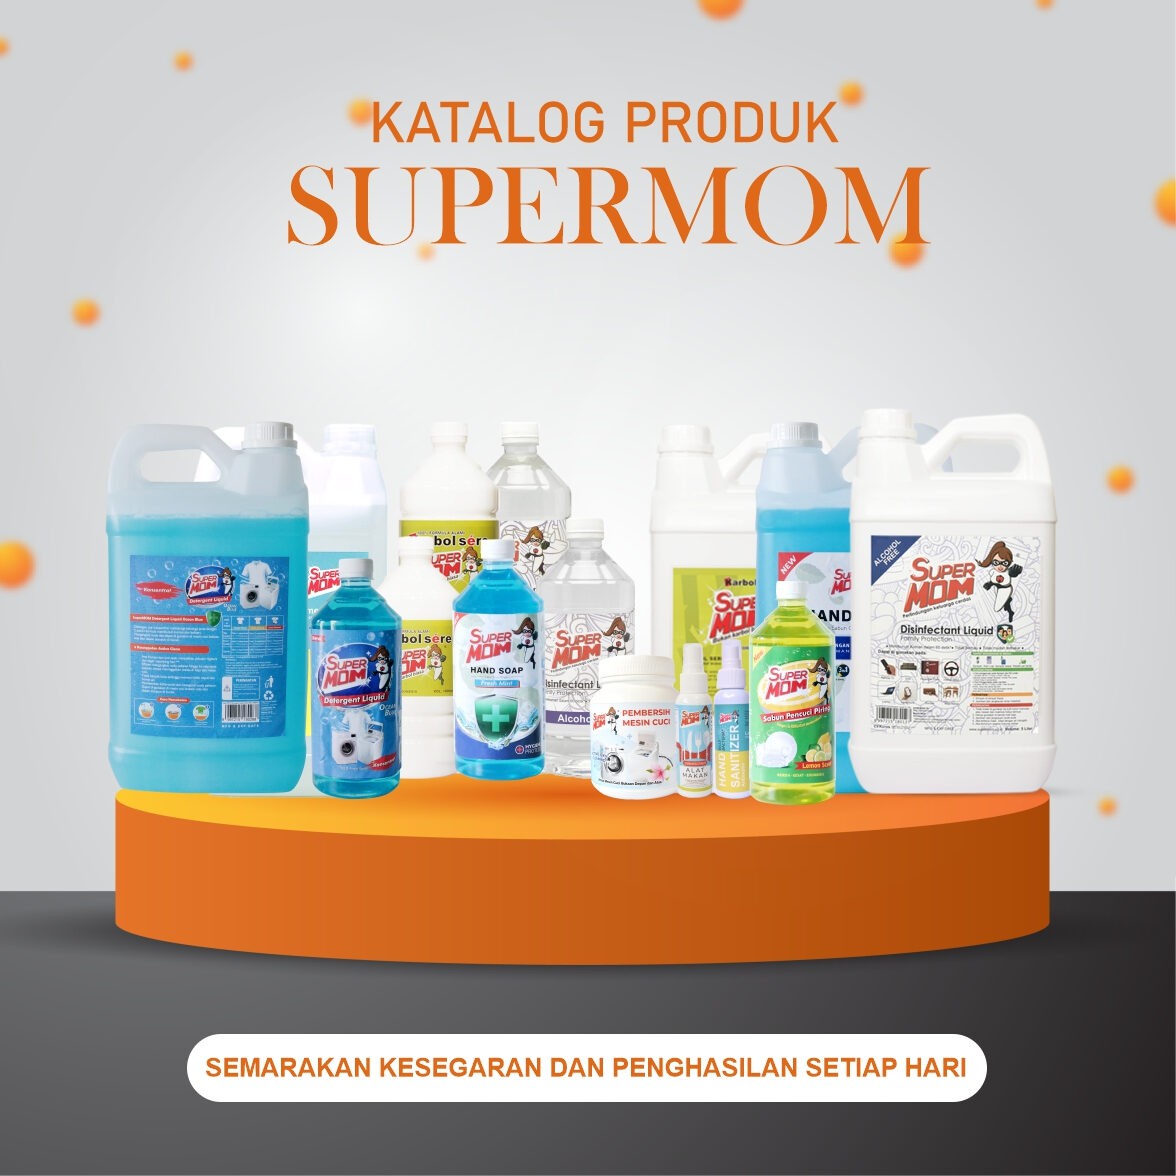 Katalog Produk Super MOM